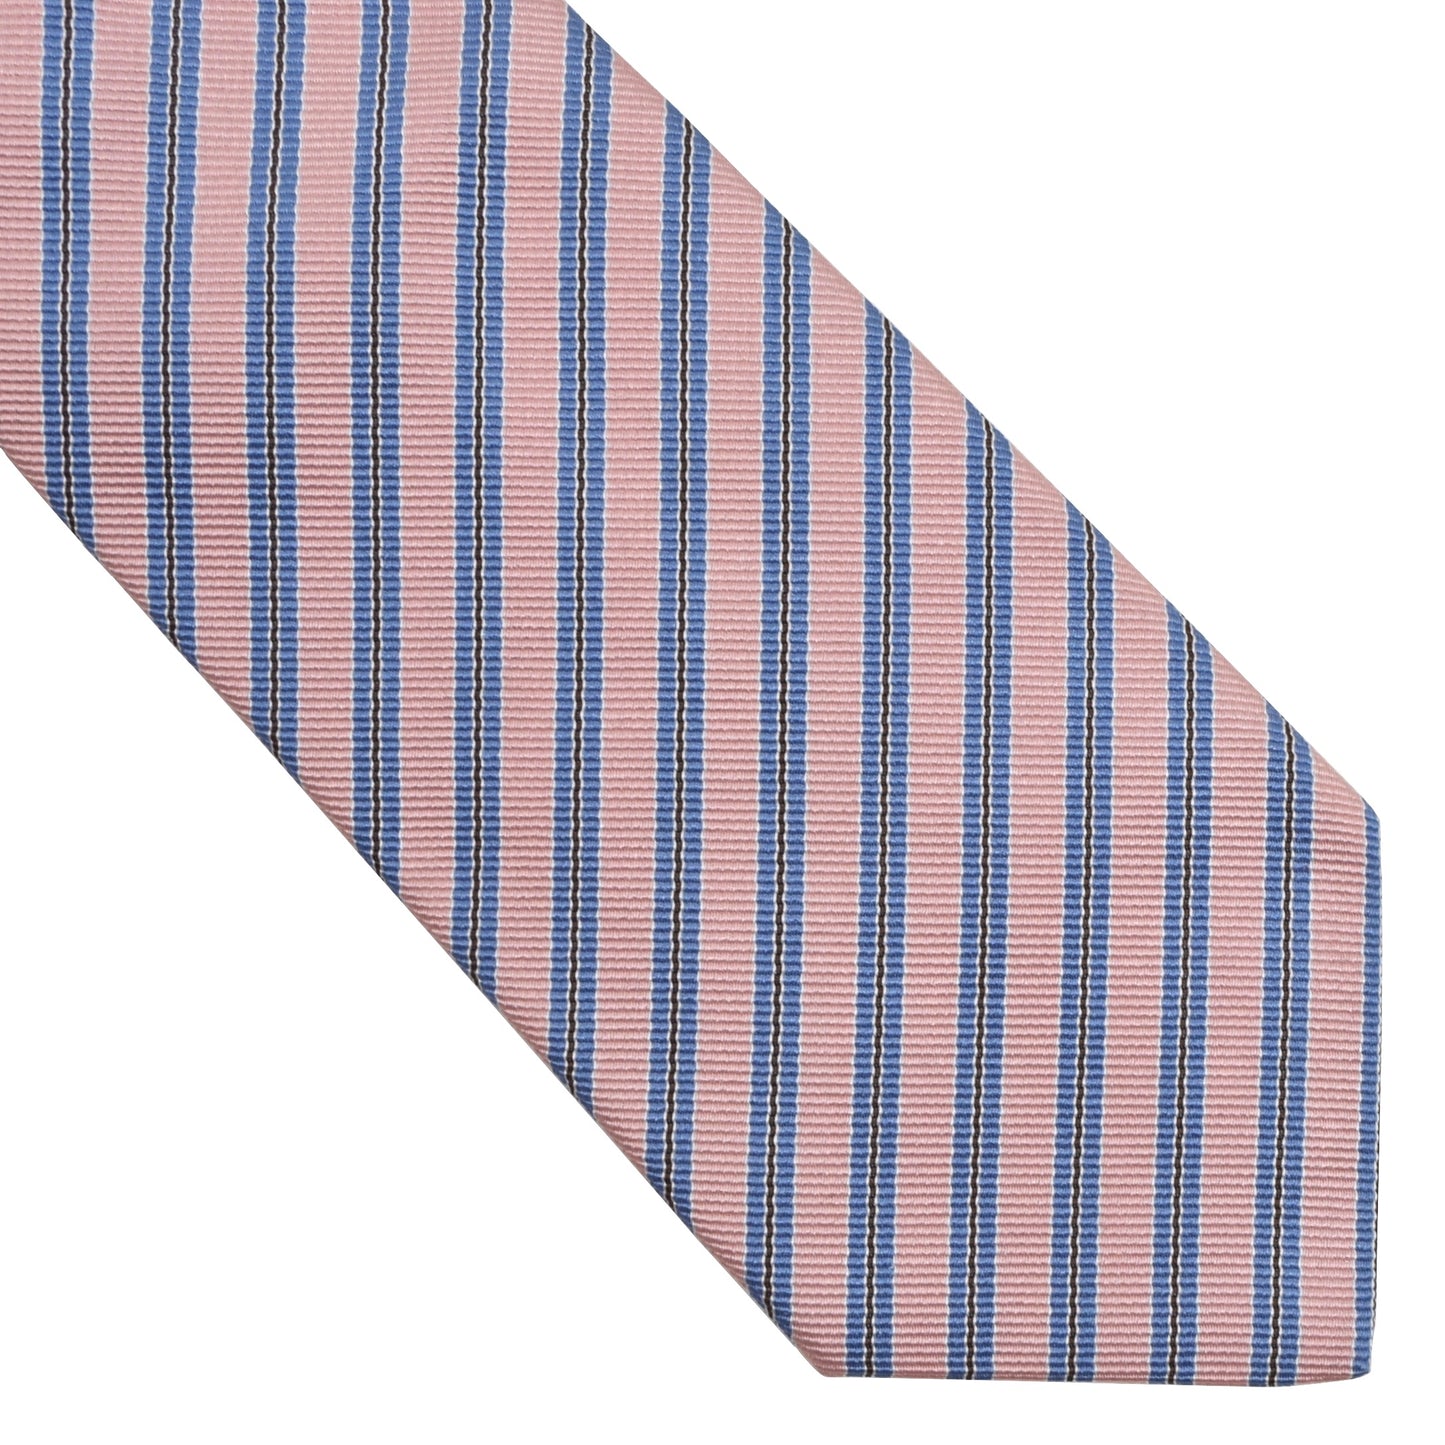 Luigi Borrelli Napoli Silk Tie - Pink & Blue Stripes